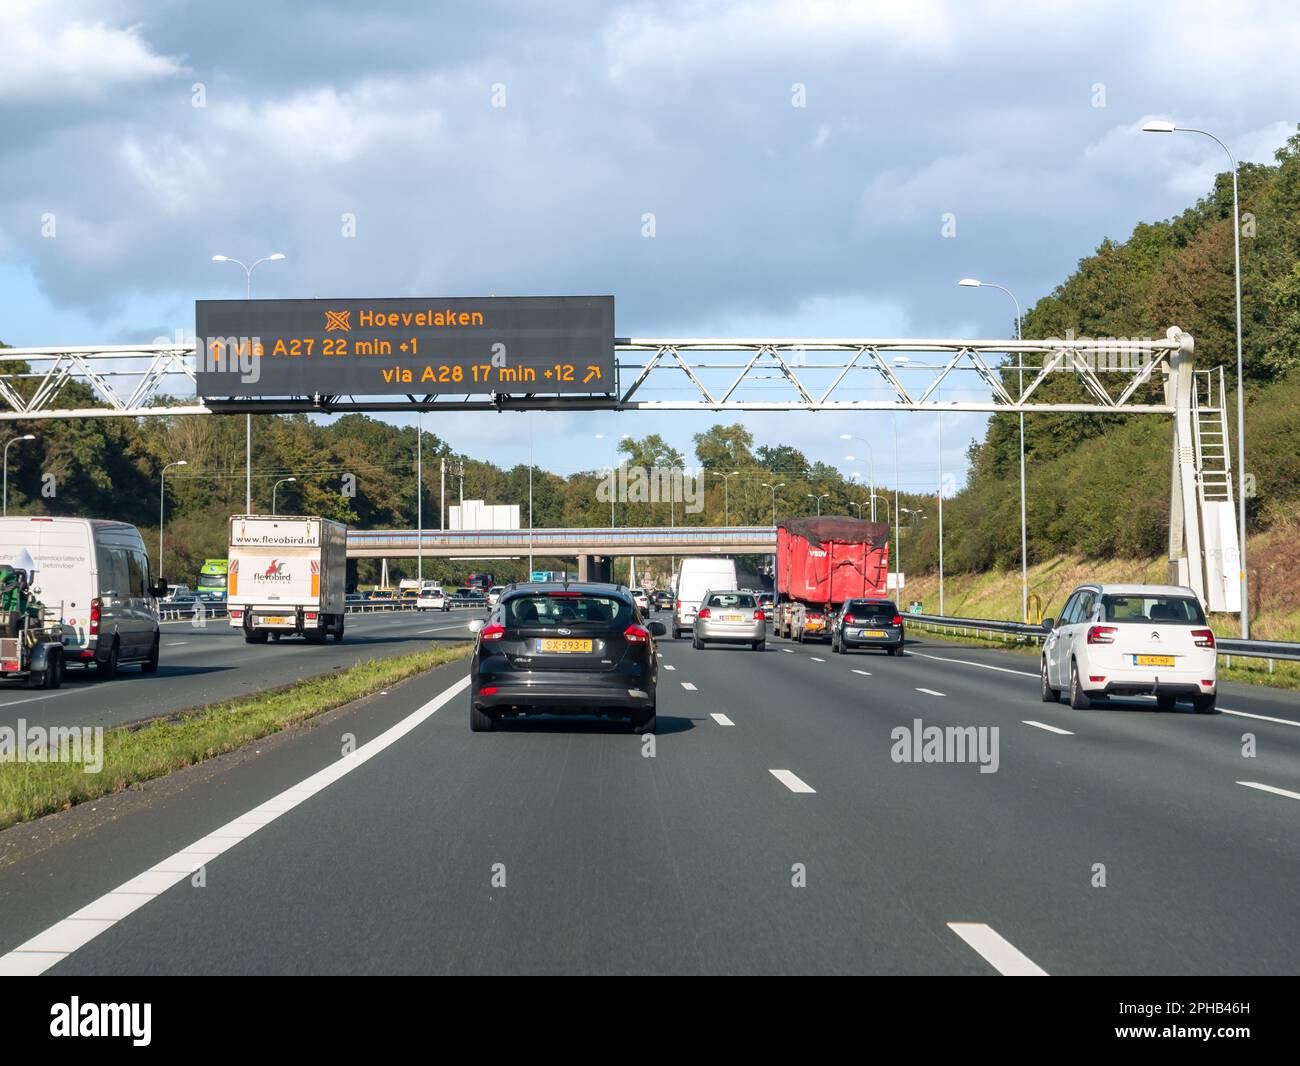 Trafic et statif aérien affichant des informations électroniques sur le temps de déplacement, autoroute A27 entre Utrecht et Hilversum, pays-Bas Banque D'Images